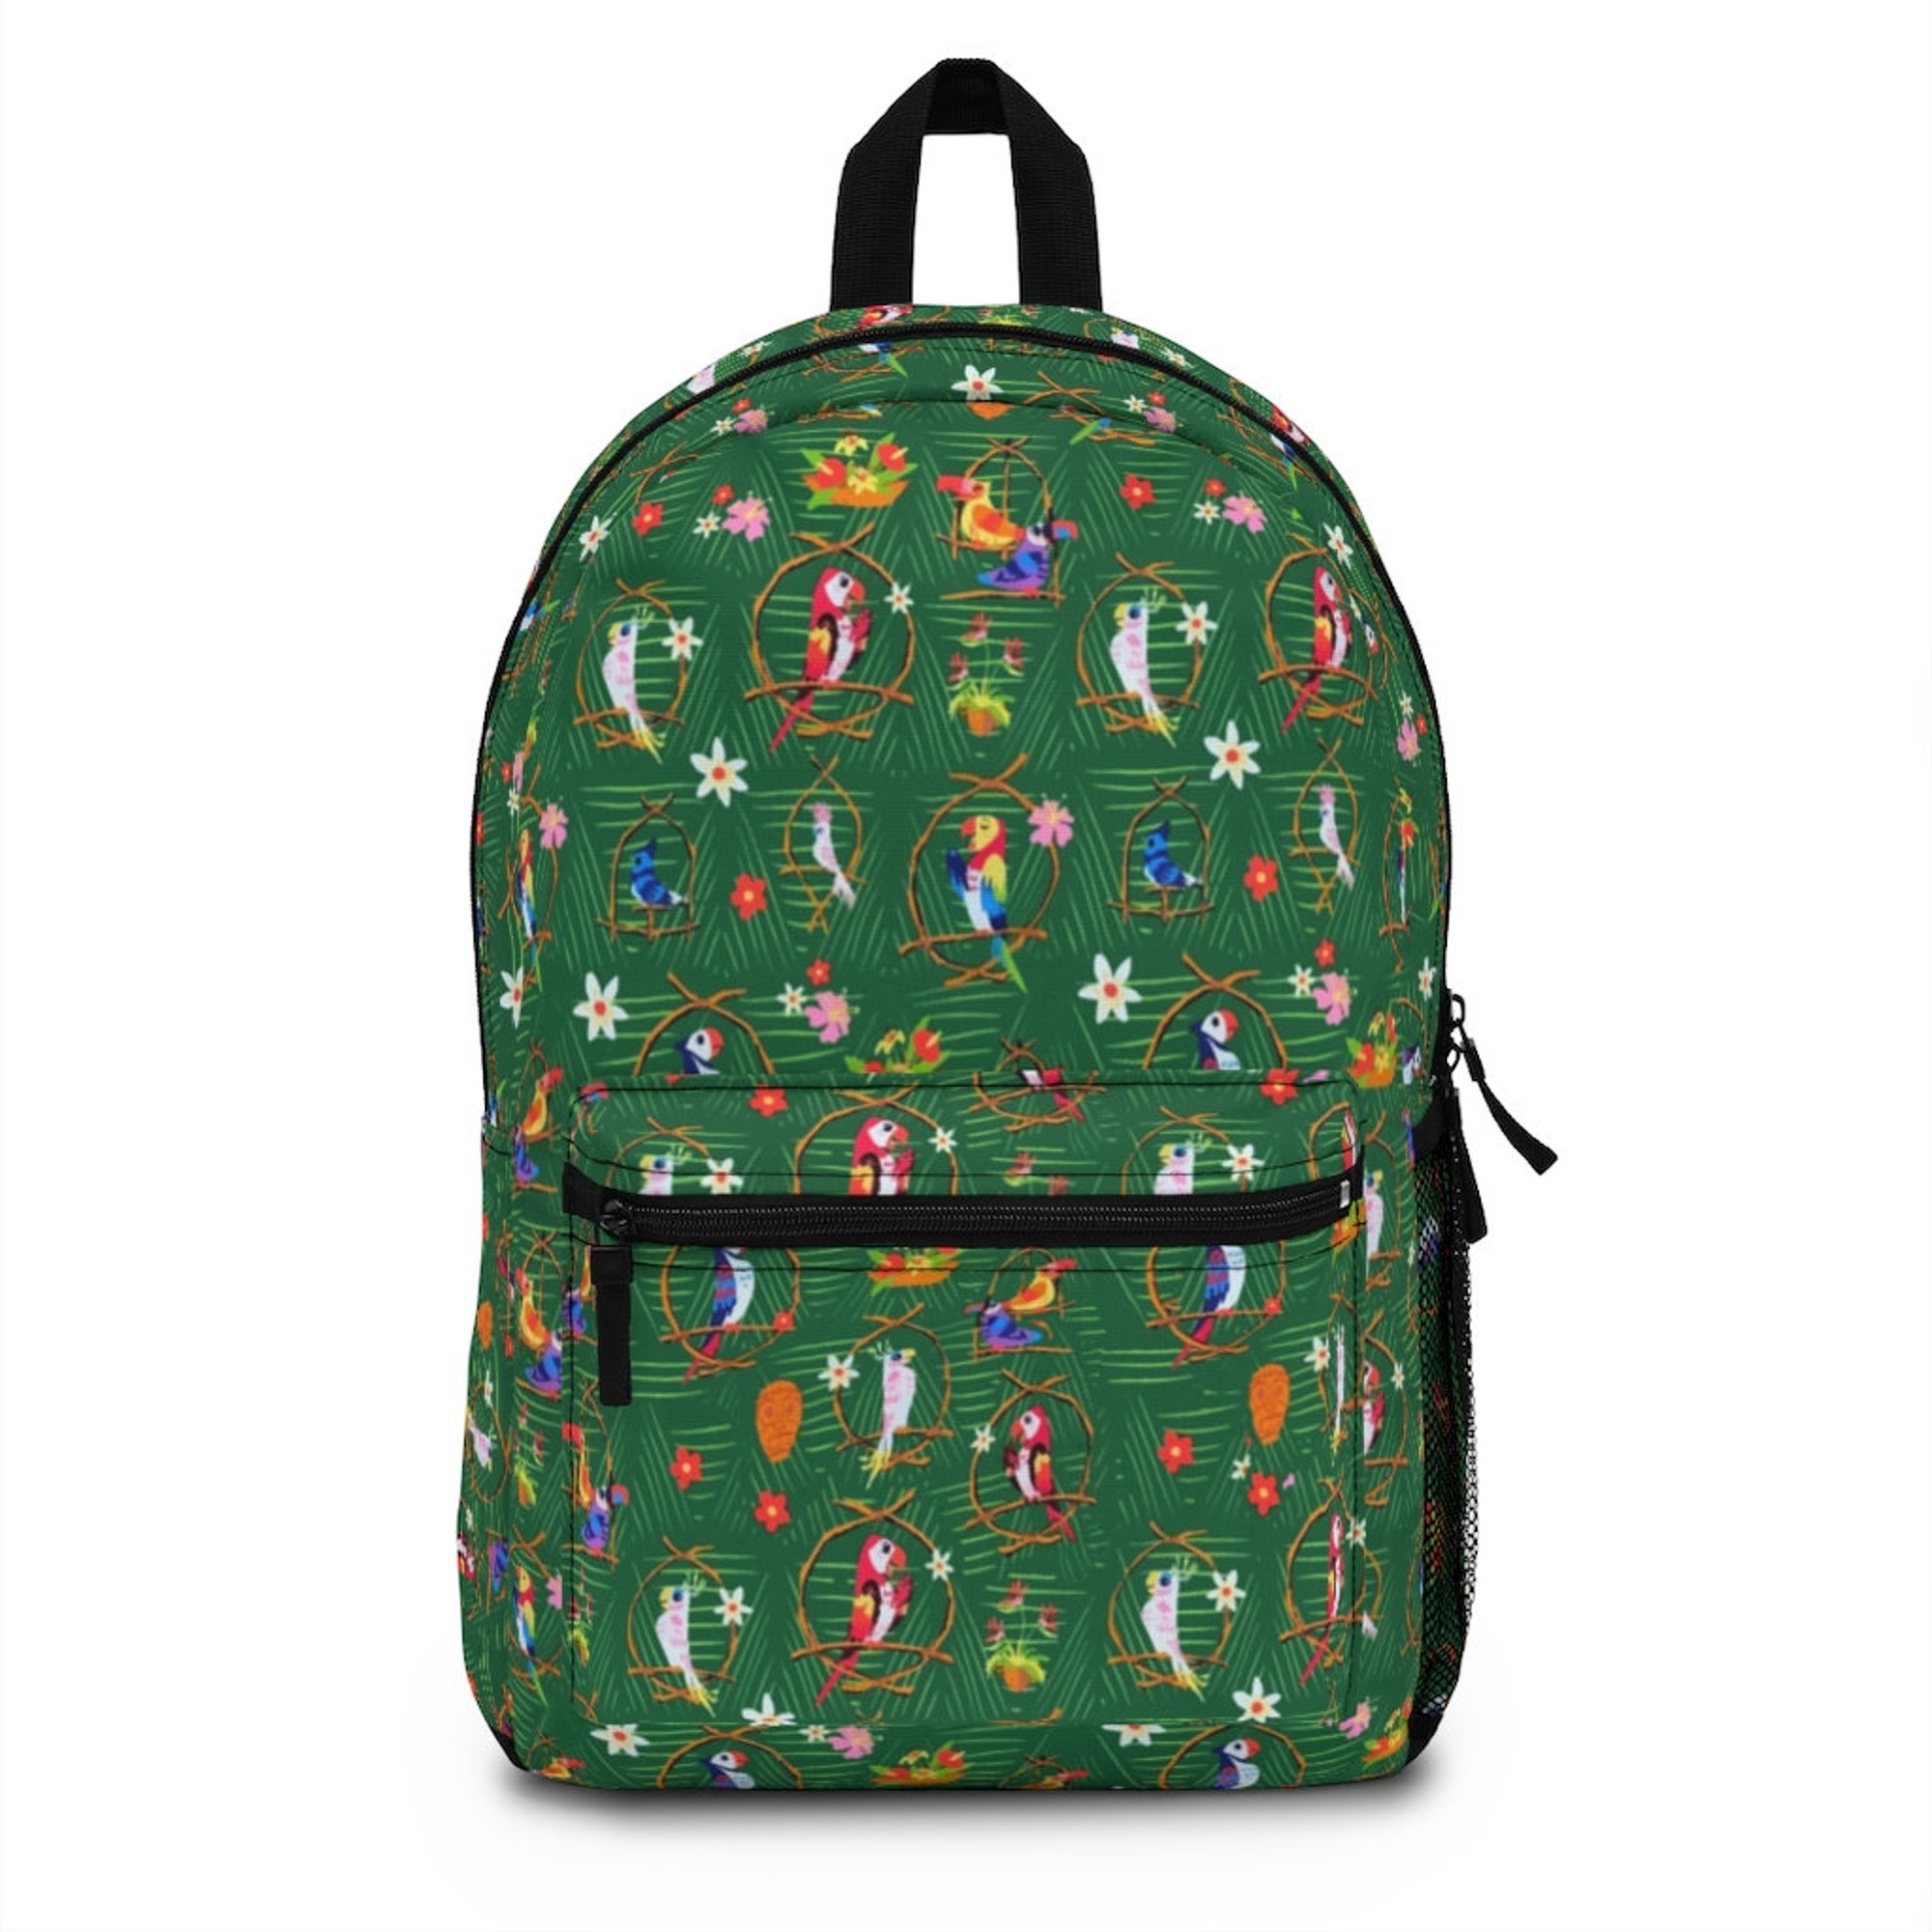 Tiki Room Birds WDW Park Bag Full Size Backpack